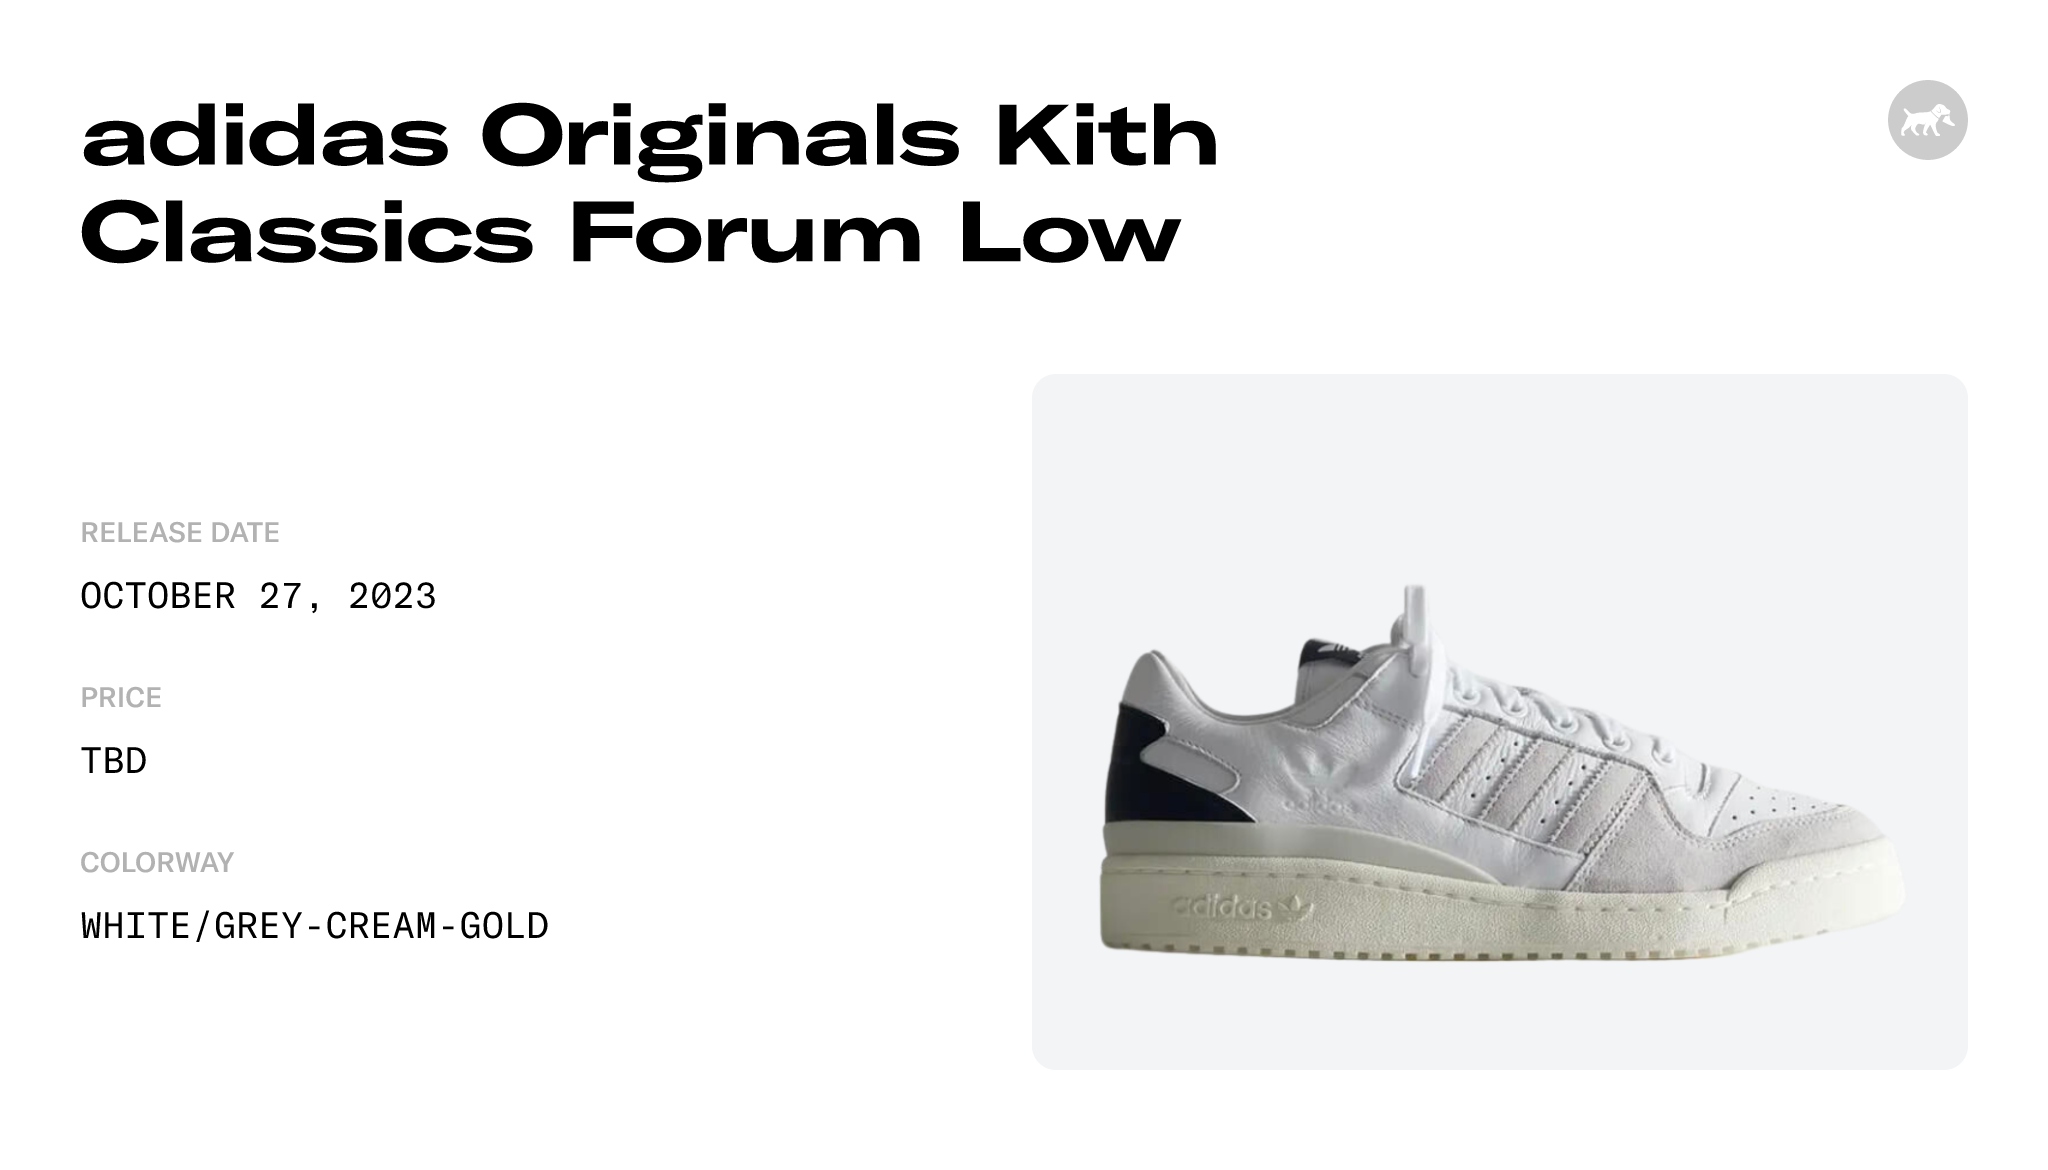 adidas Originals Kith Classics Forum Lowfalse Raffles and Release Date